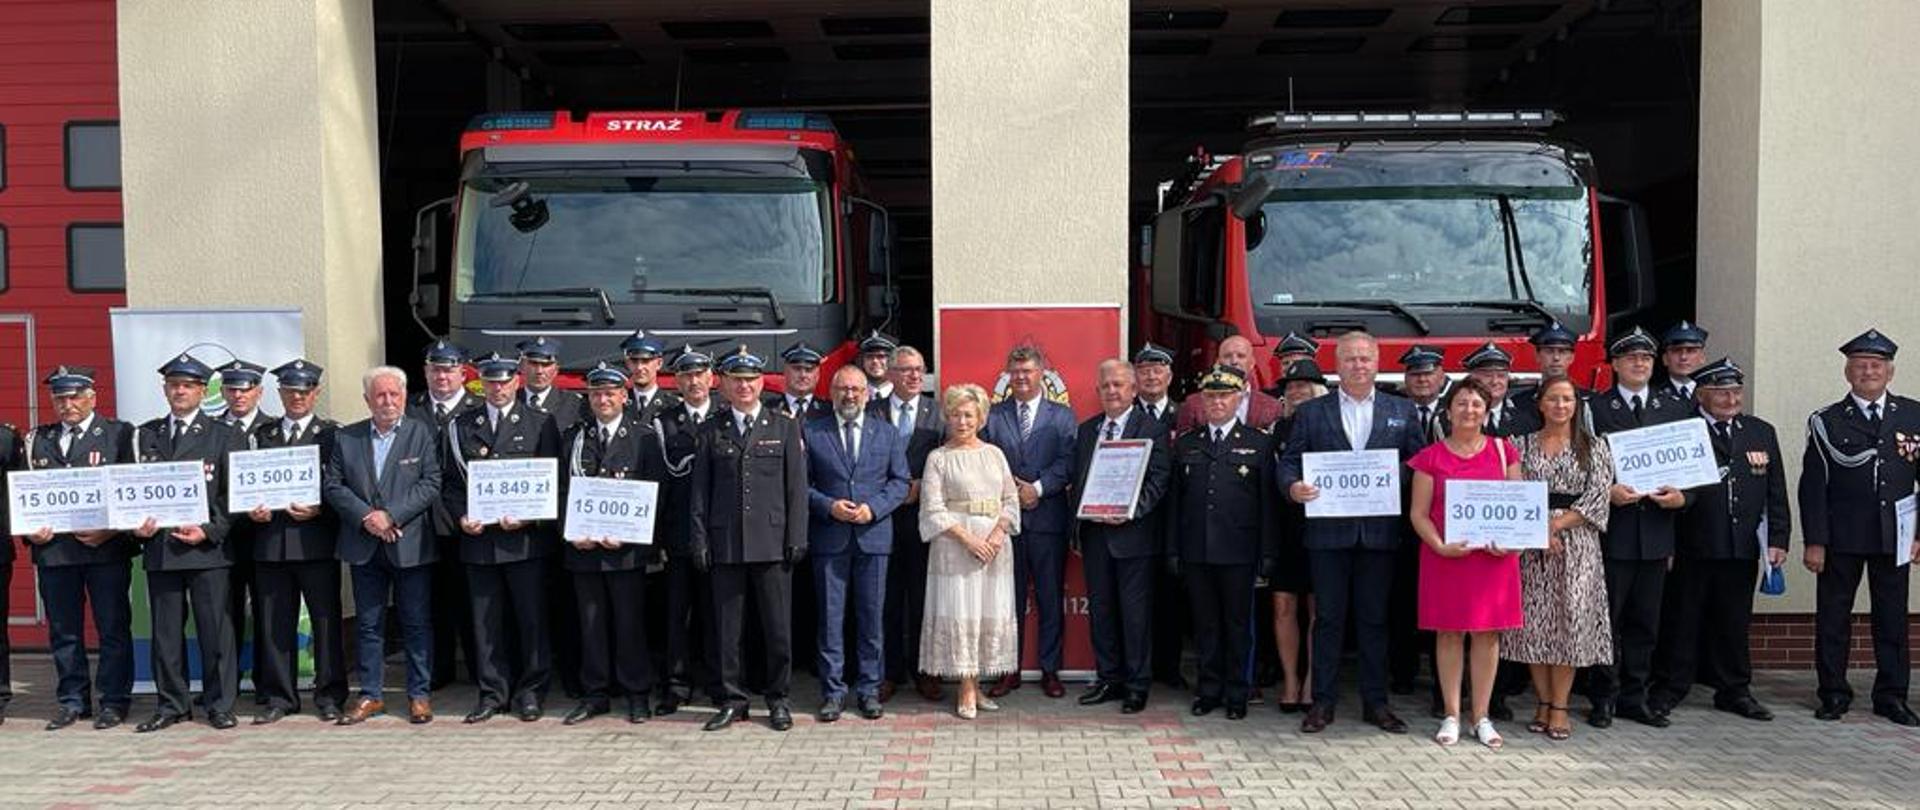 Ponad 1 655 706 zł wsparcia finansowego dla Jednostek Ochotniczych Straży Pożarnych z powiatu mławskiego